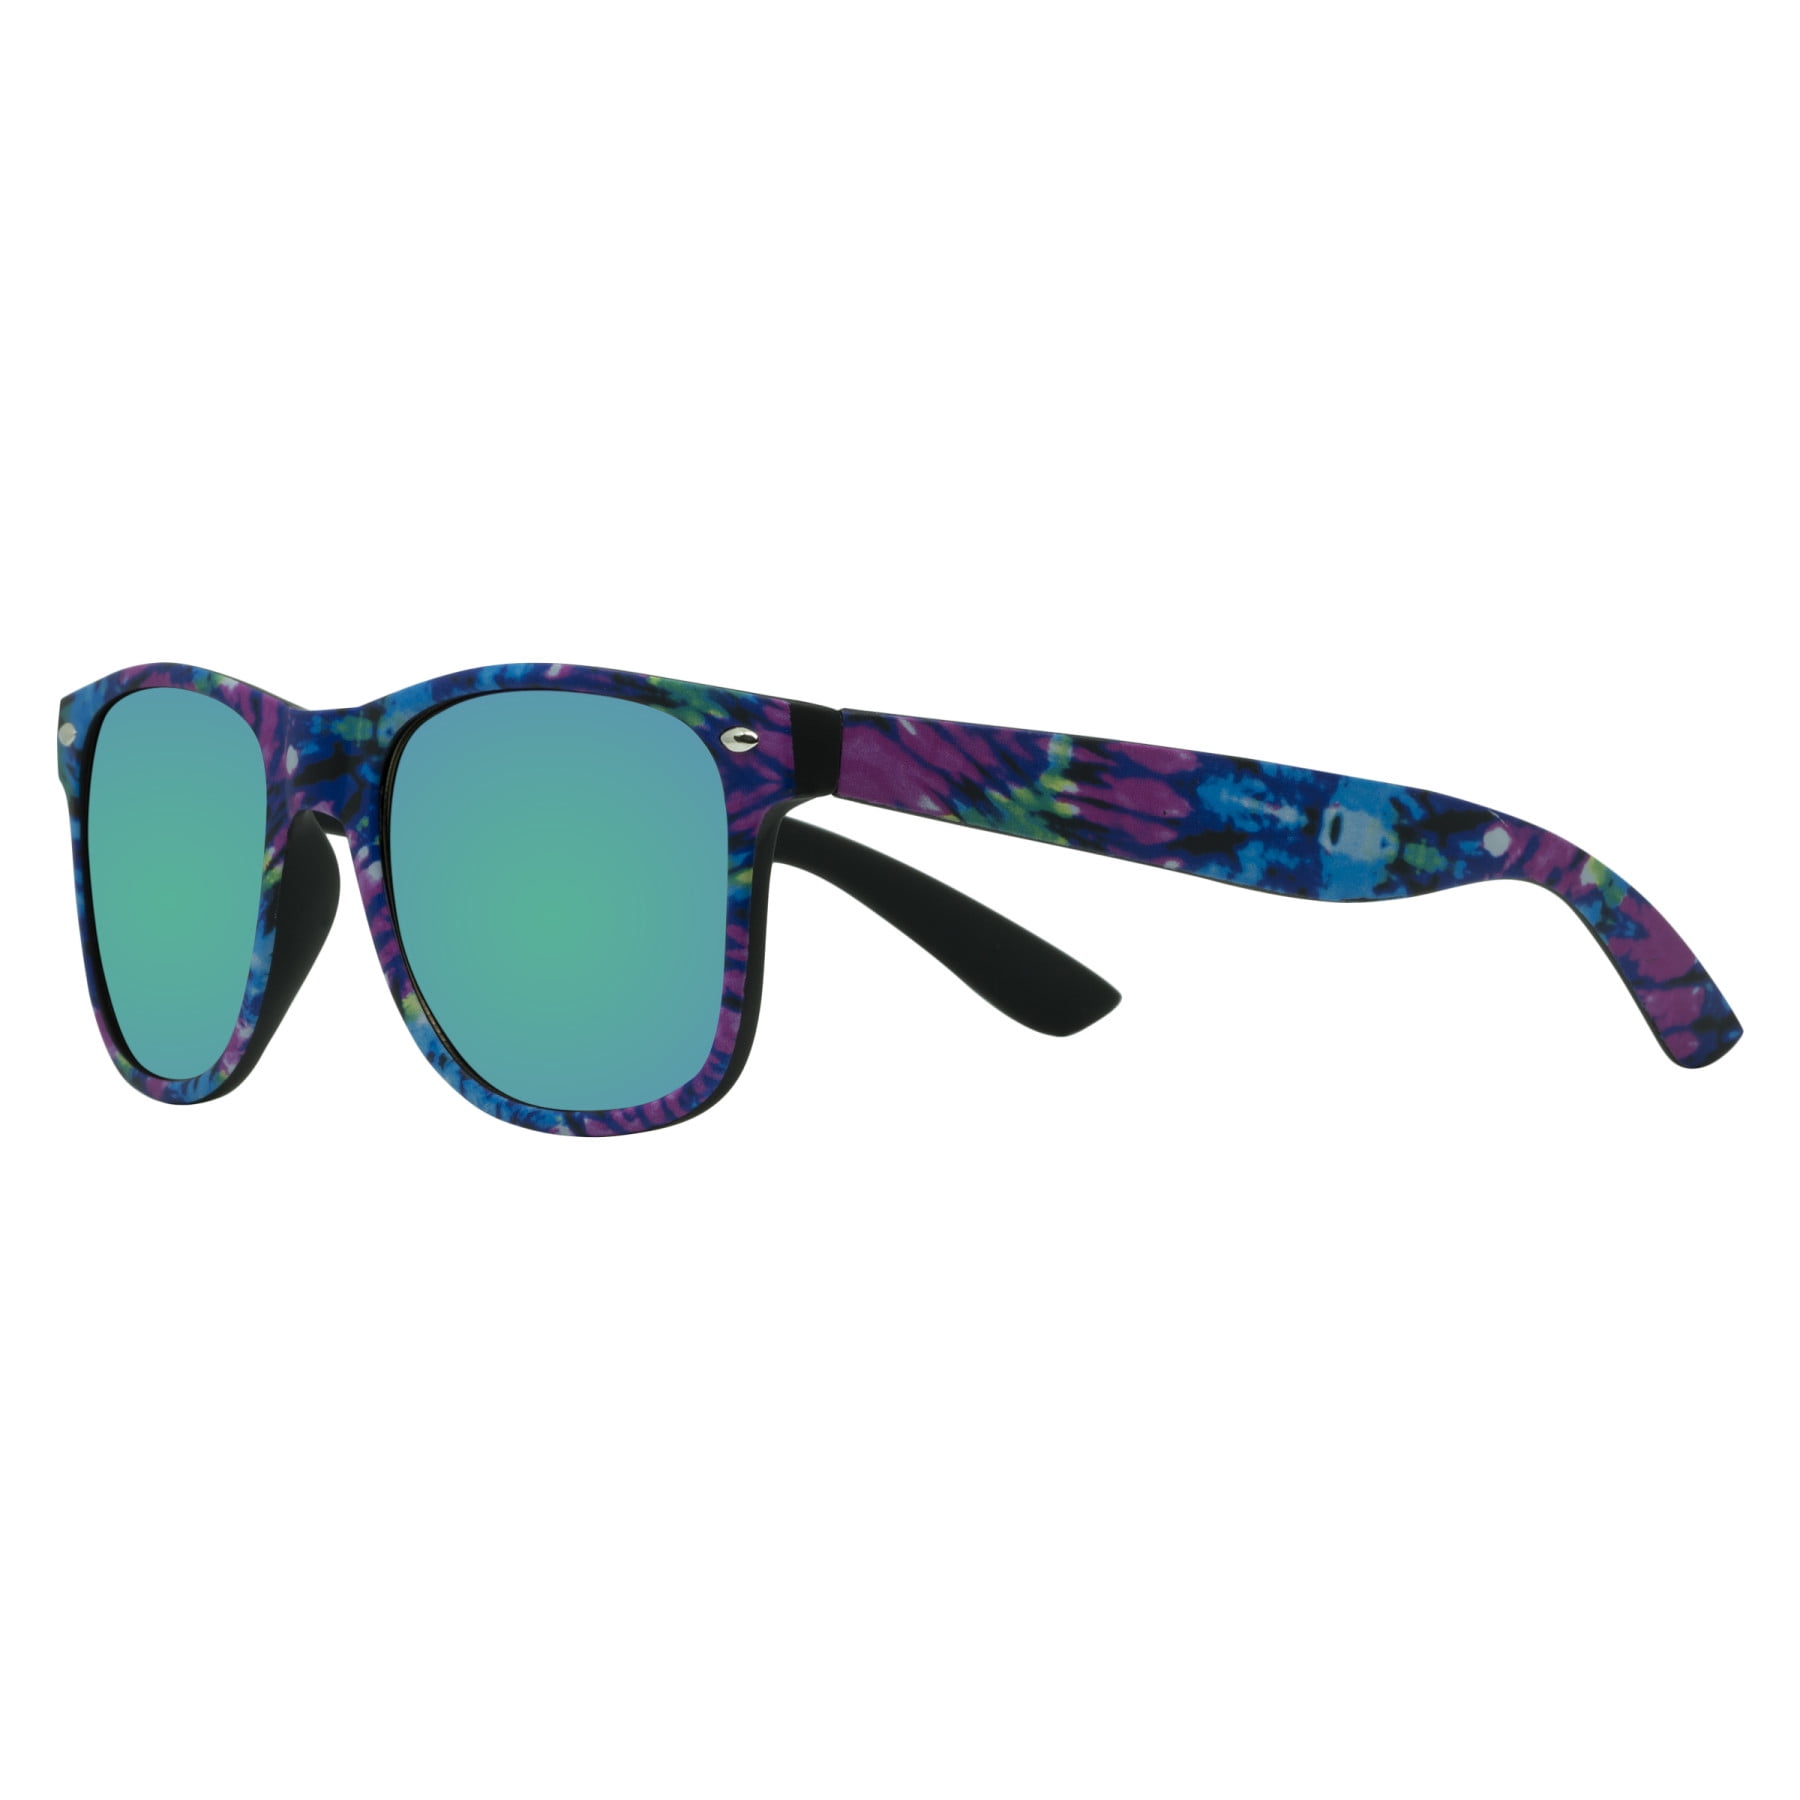 Piranha Maui Retro Sunglasses with Green Mirror Smoke Lens